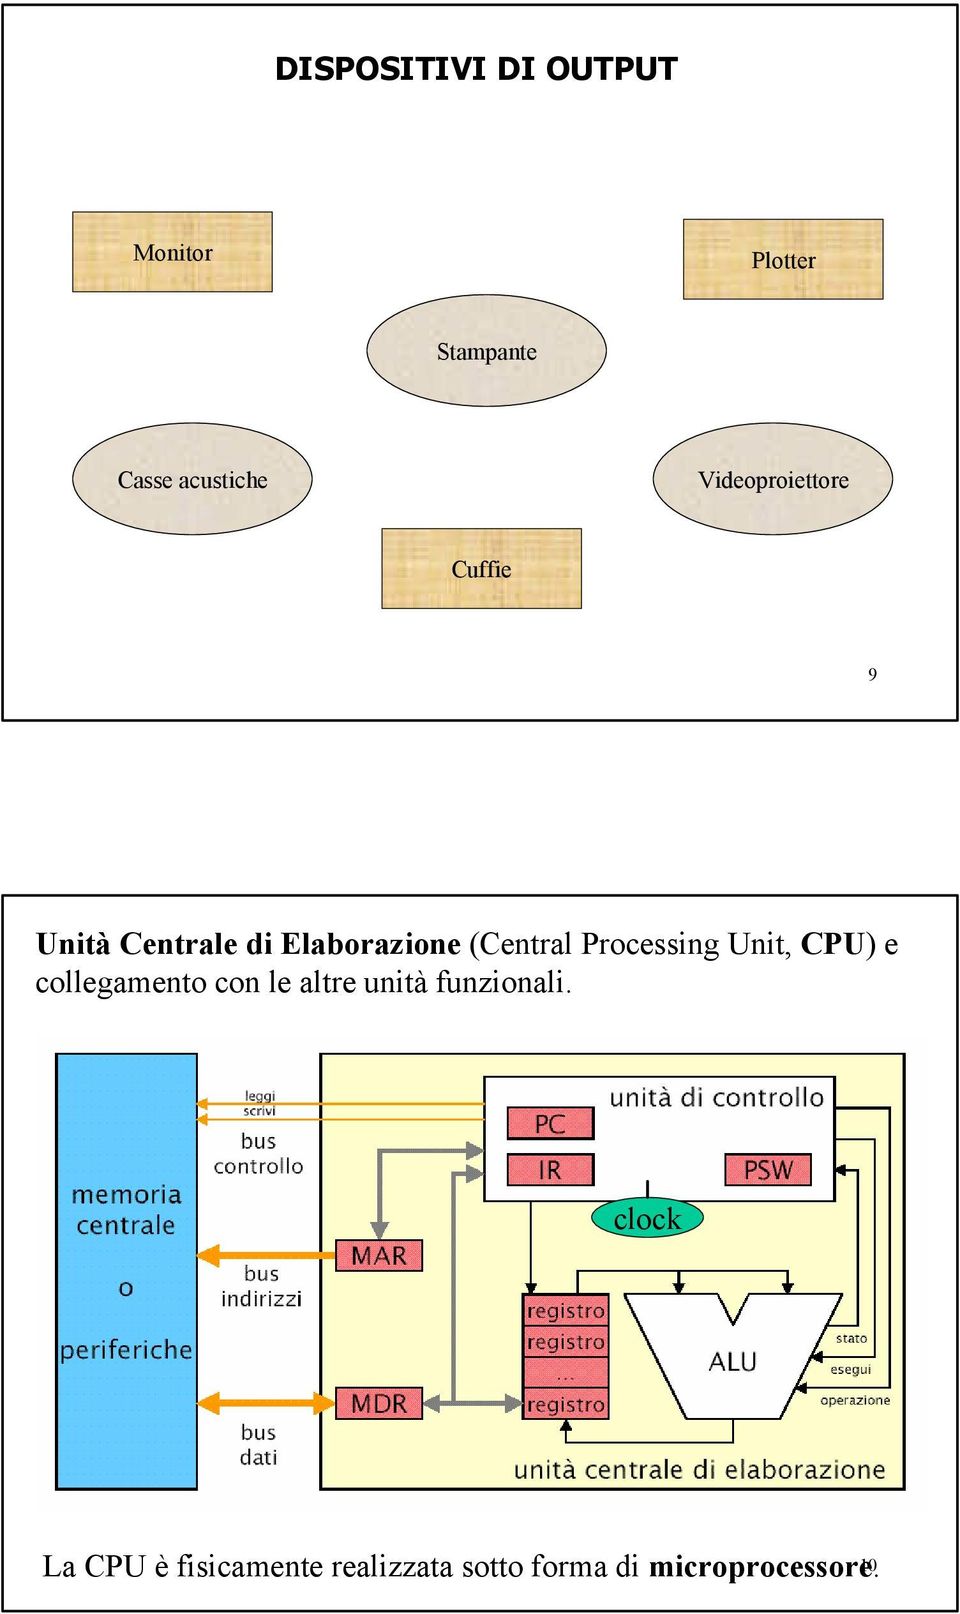 Processing Unit, CPU) e collegamento con le altre unità funzionali.